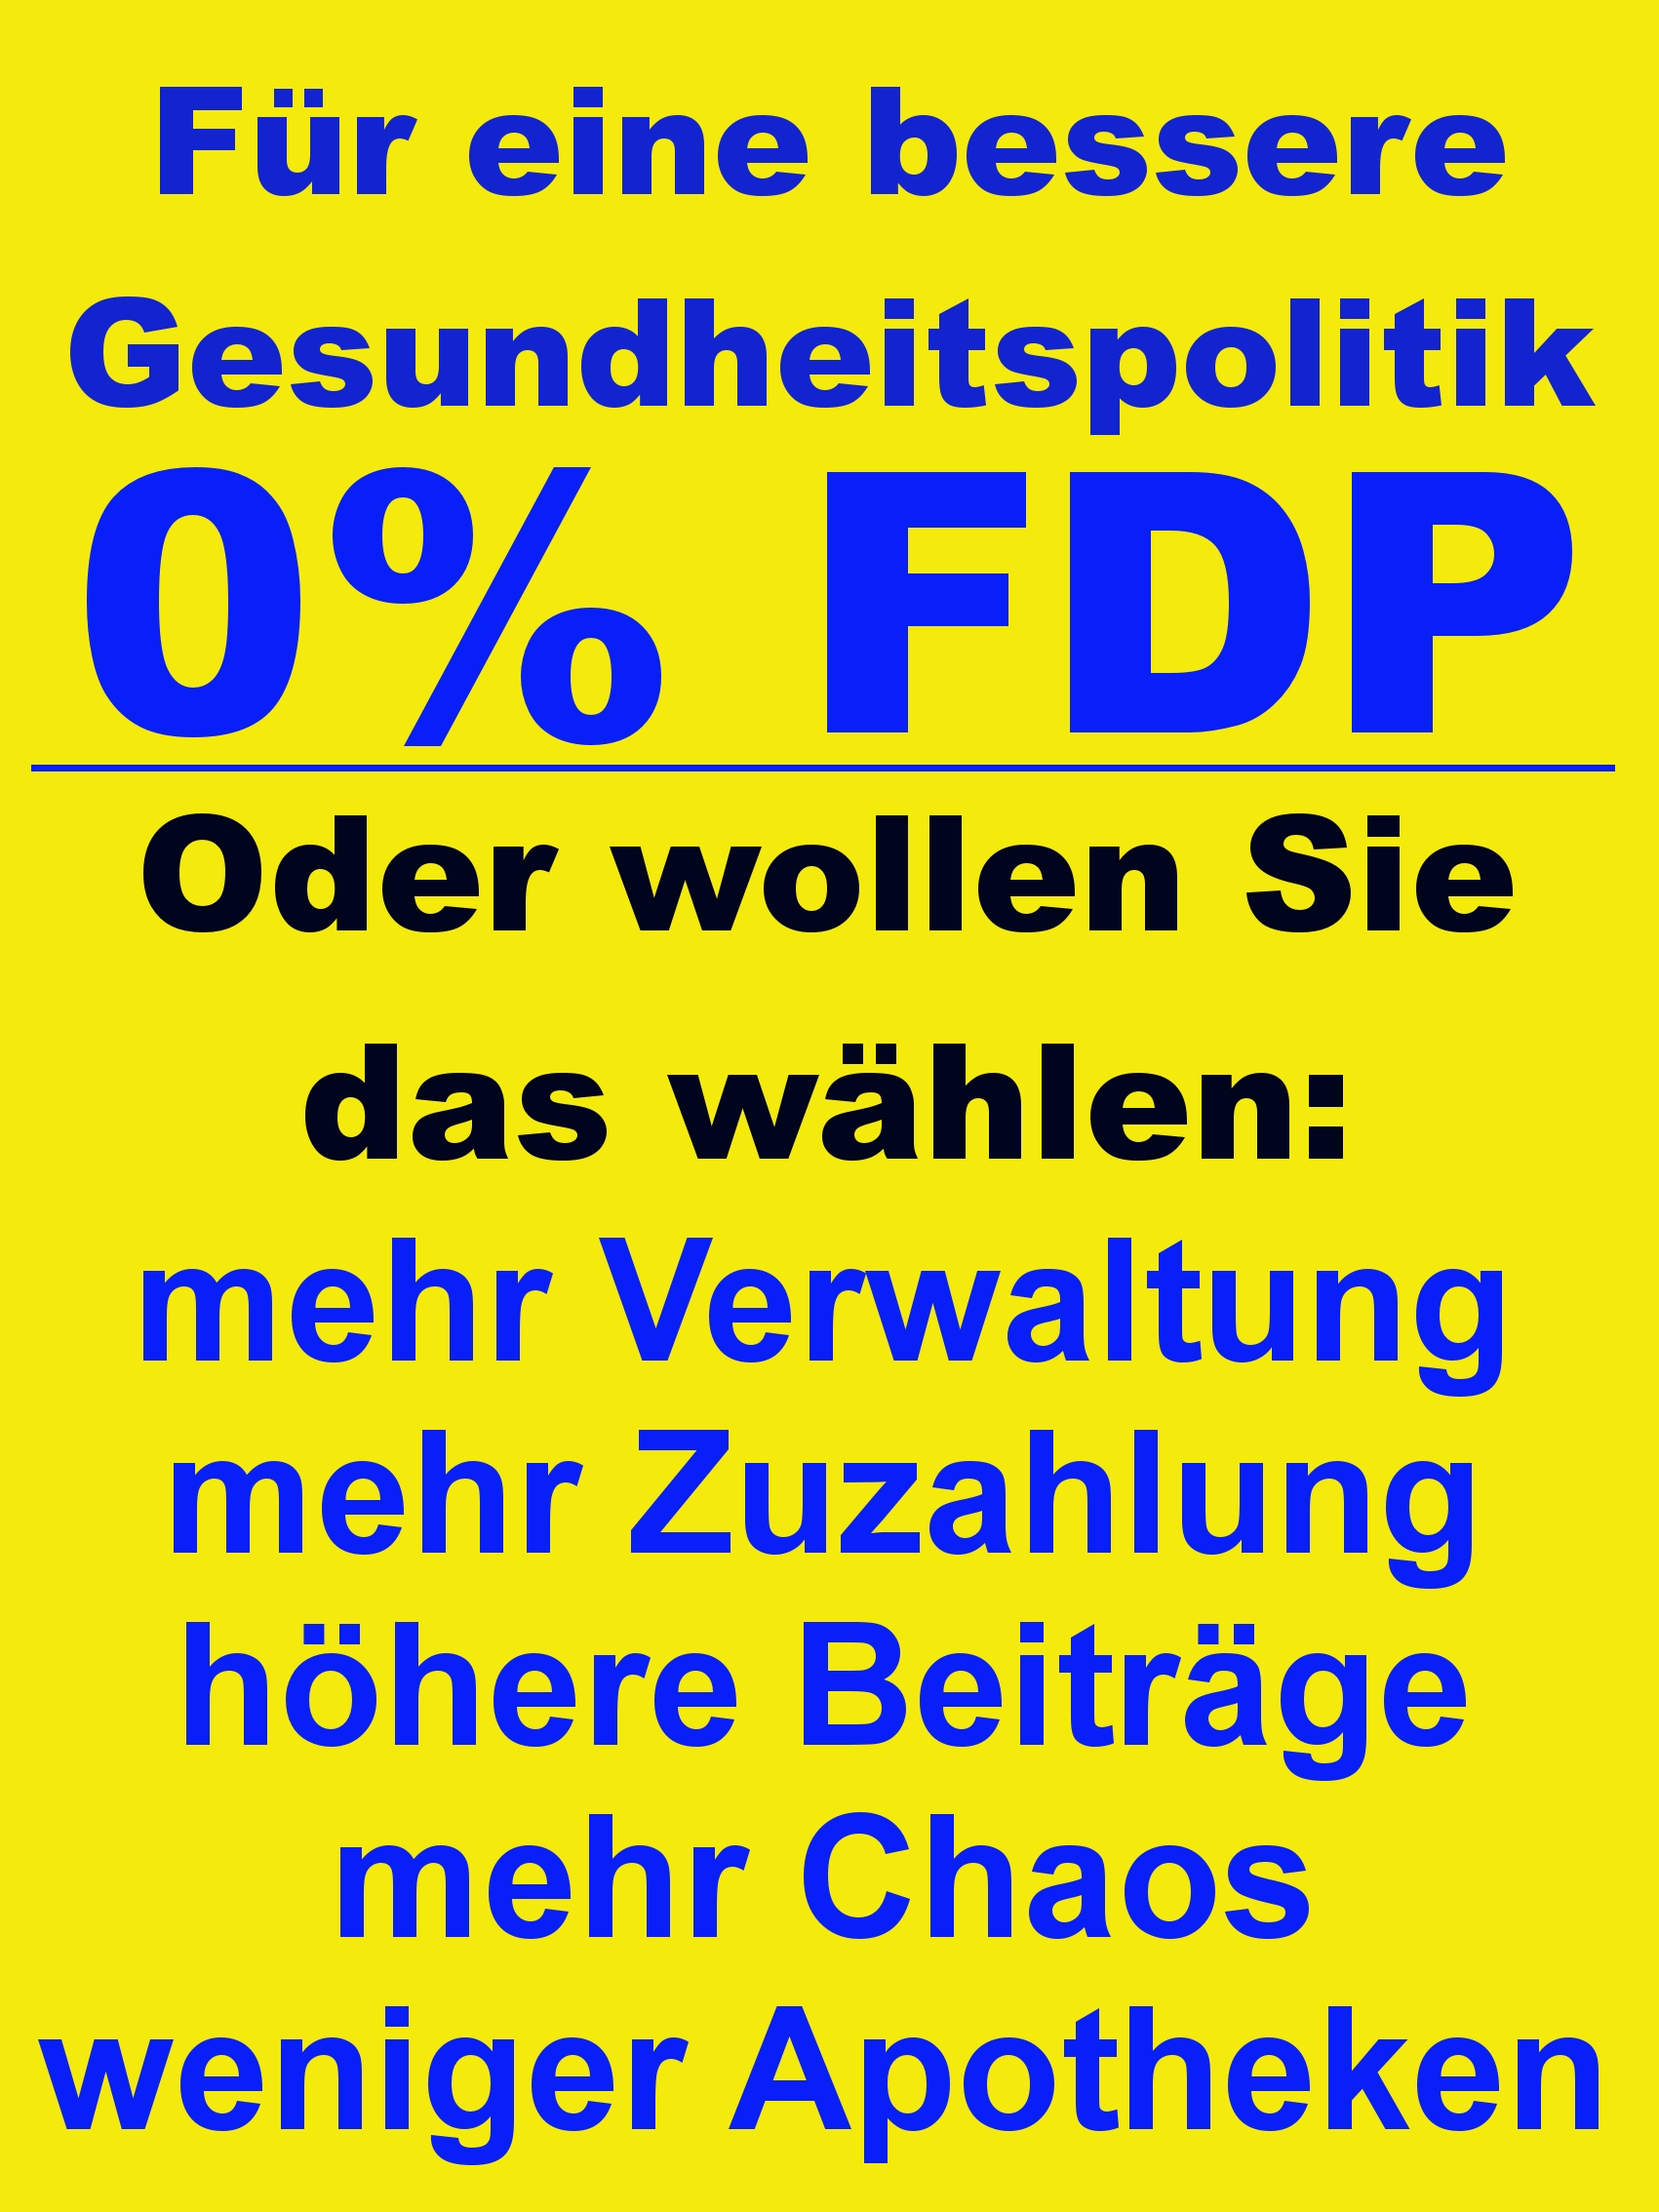 Für eine bessere Gesundheitspolitik 0% FDP ! mehr Verwaltung, mehr Zuzahlung, höhere Beiträge, mehr Chaos, weniger Apotheken ©2011 Dorotheen-Apotheke 56269 Dierdorf